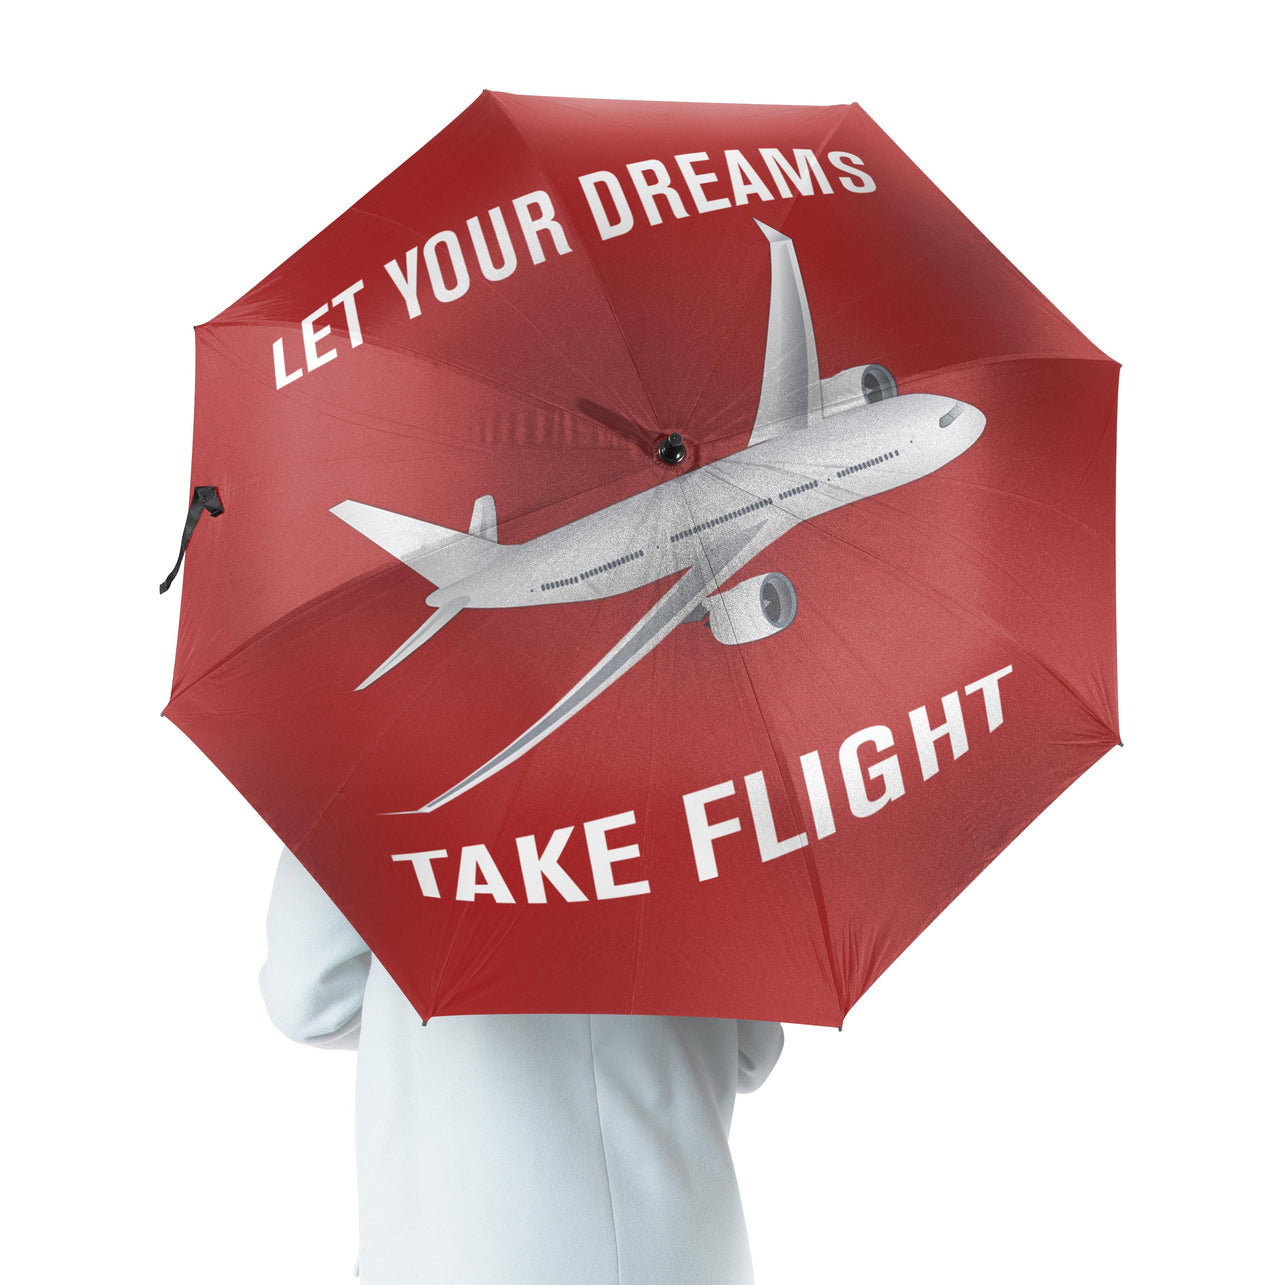 Let Your Dreams Take Flight Designed Umbrella